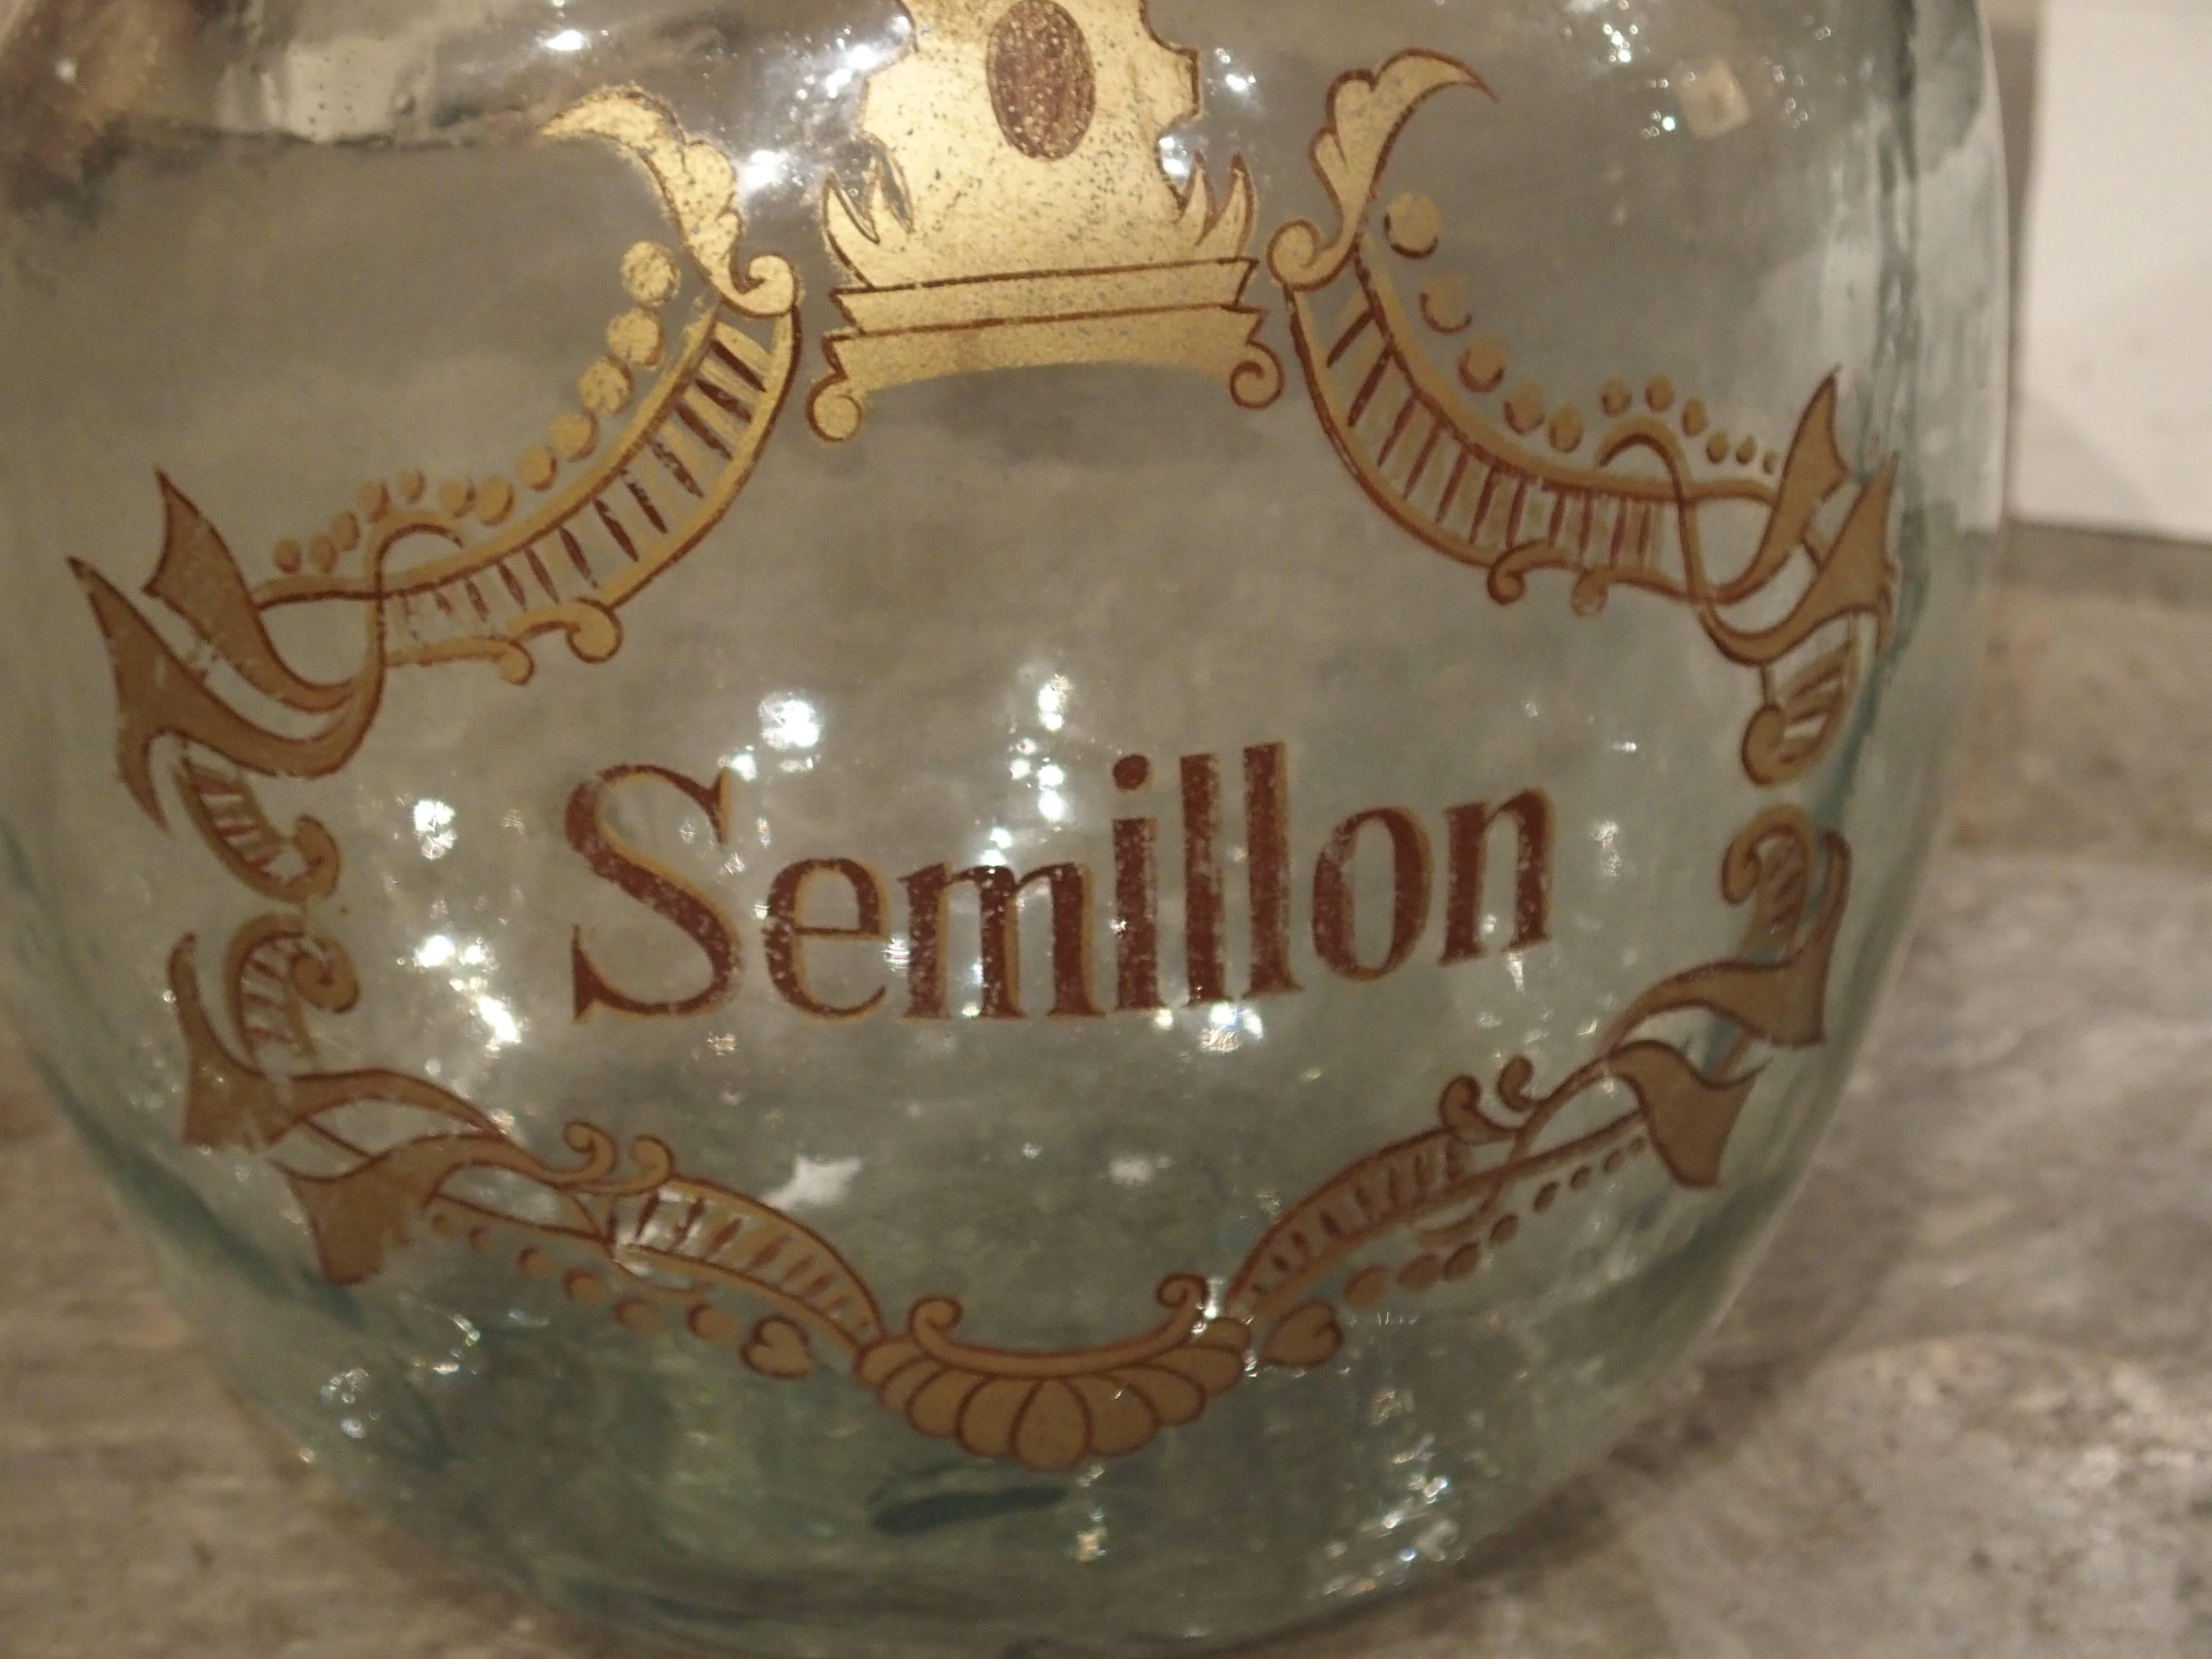 Large Handblown Semillon Demijohn Bottle from France 1